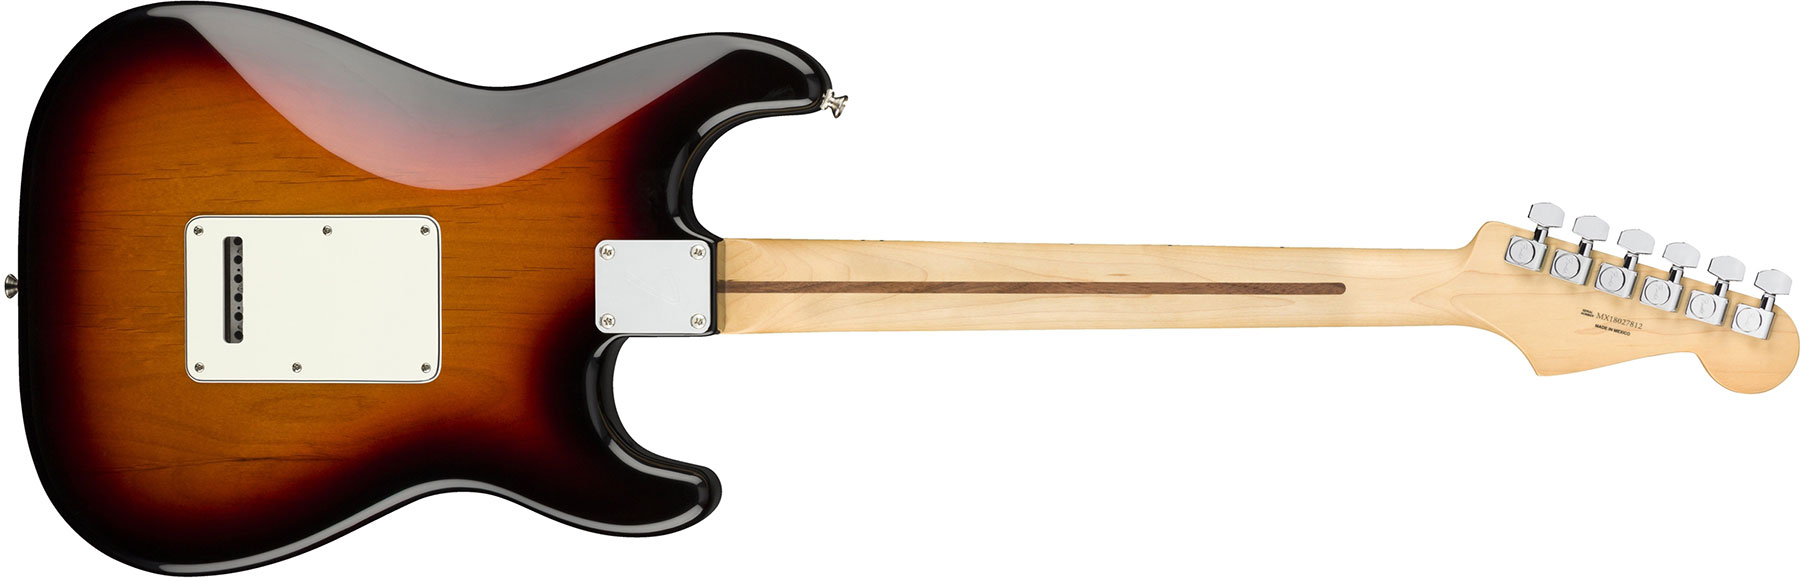 Fender Strat Player Lh Gaucher Mex Sss Mn - 3-color Sunburst - E-Gitarre für Linkshänder - Variation 4